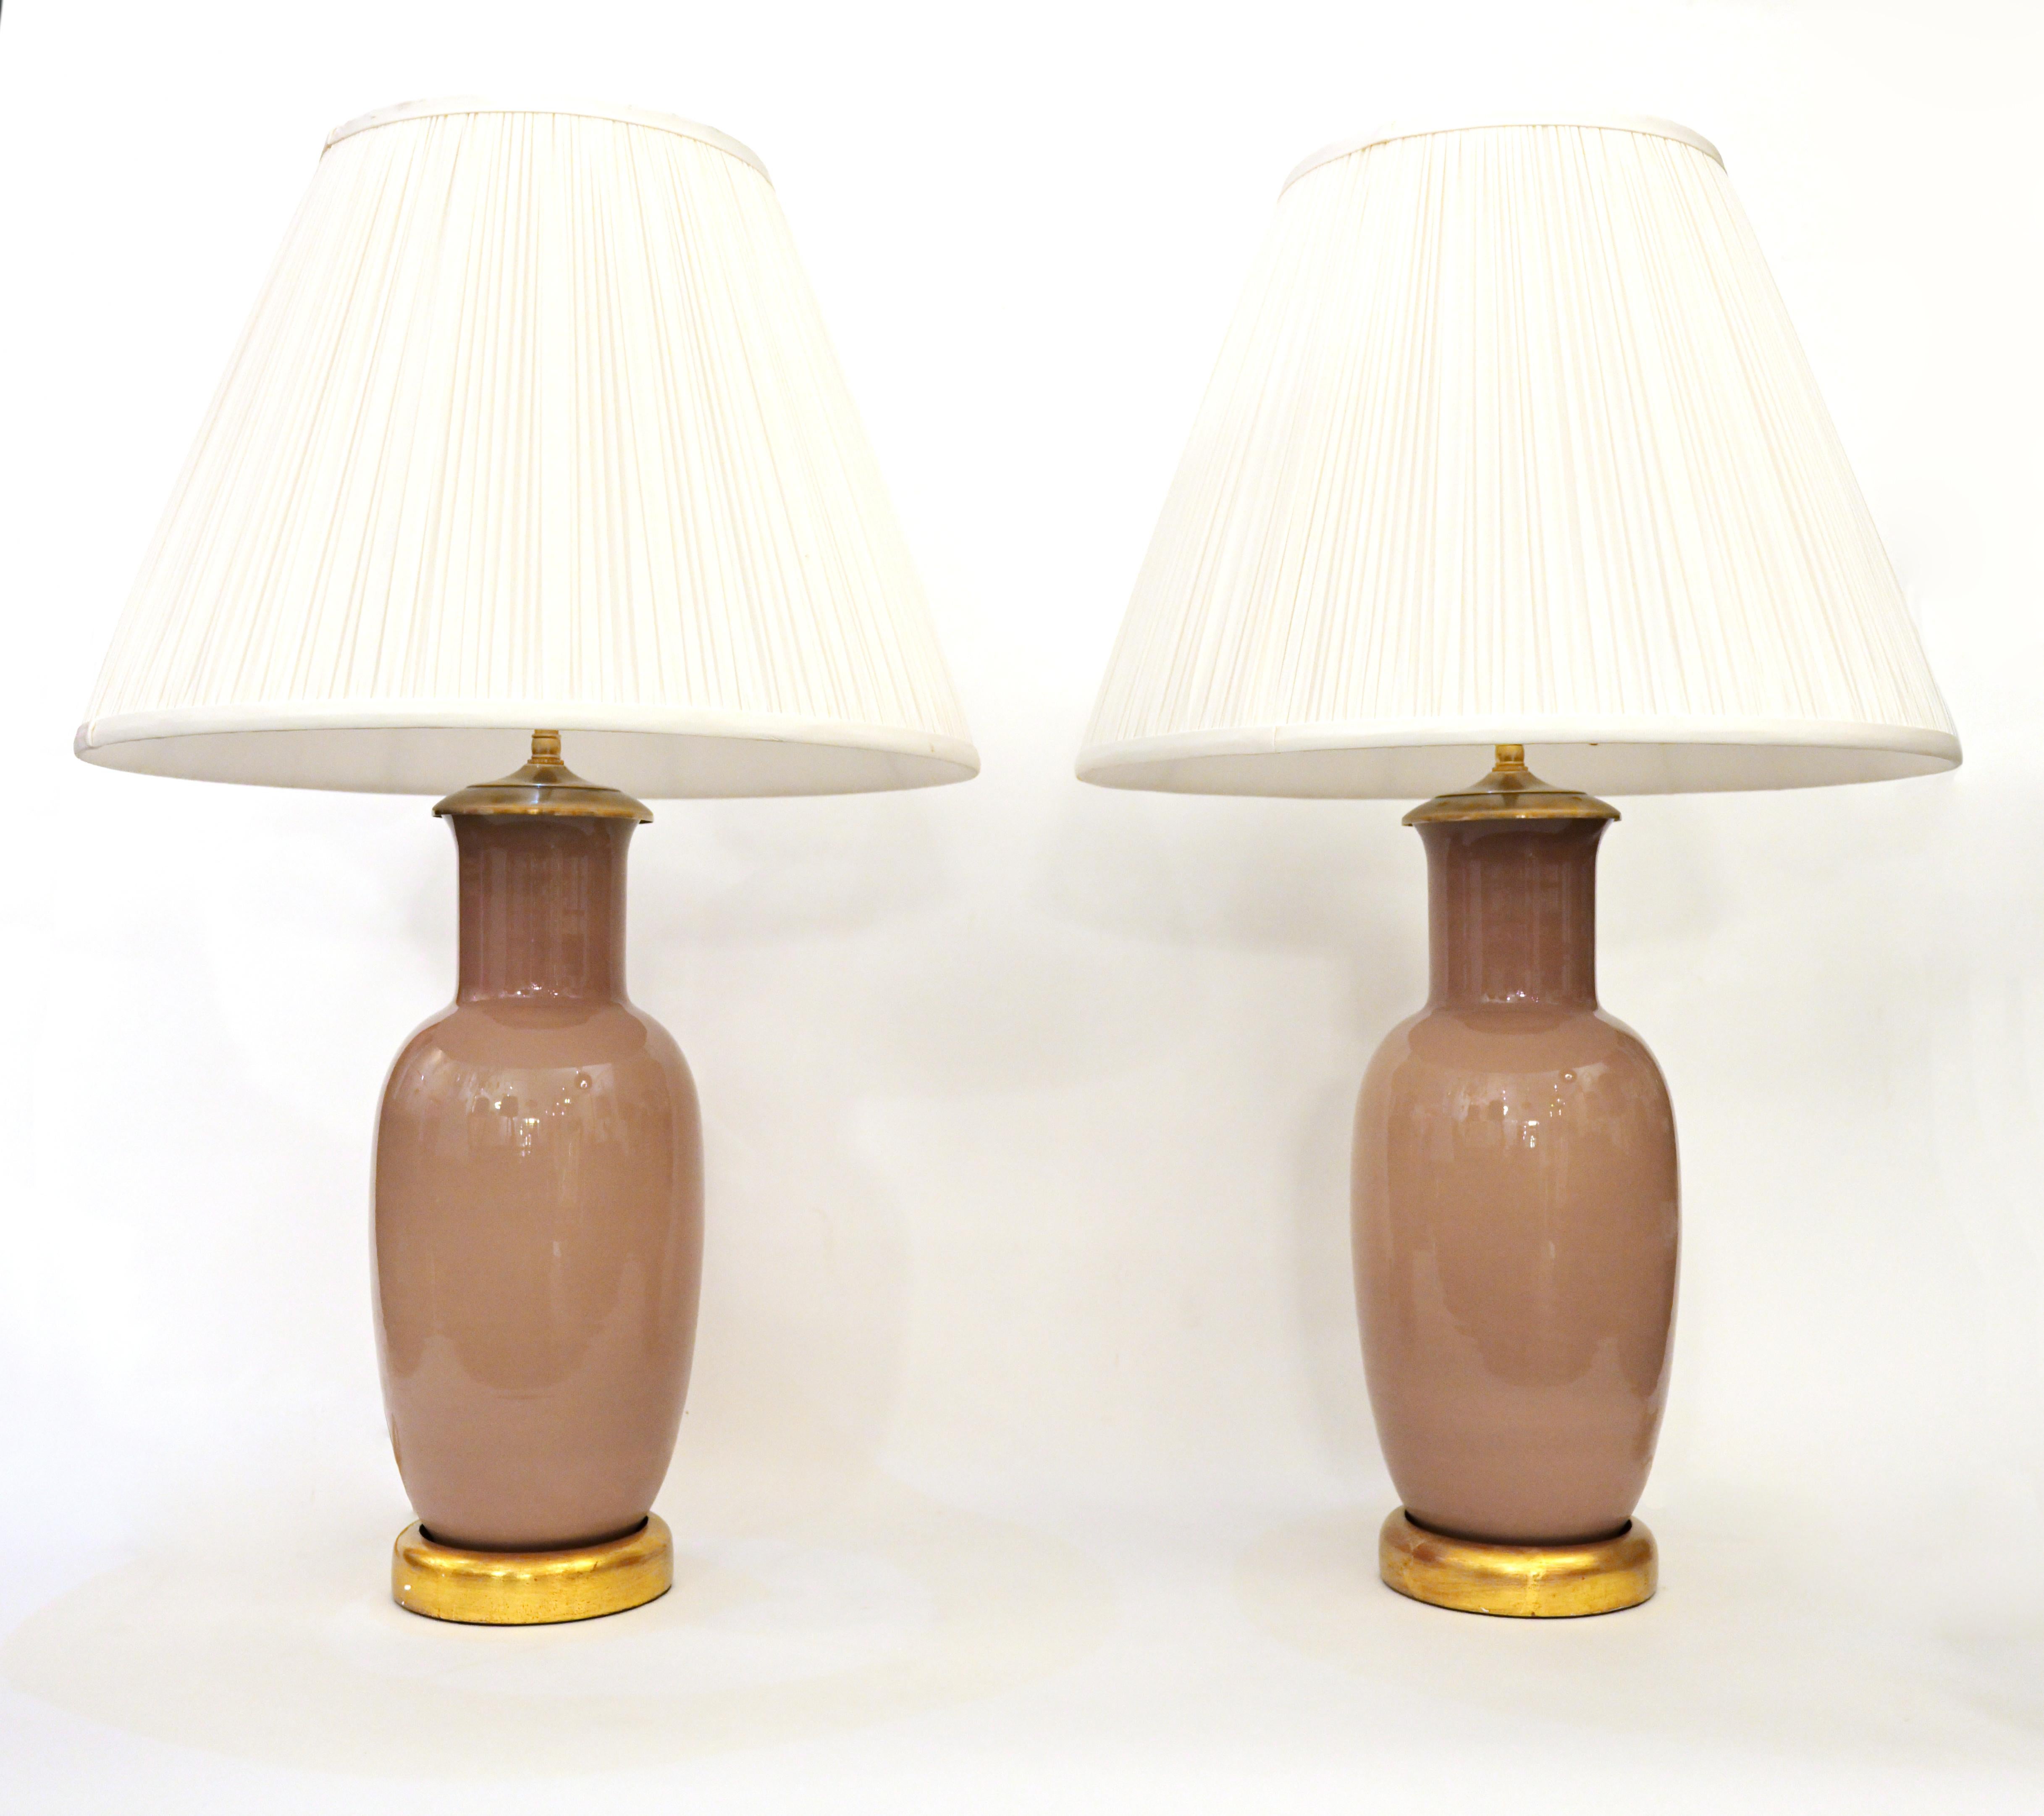 Une paire de lampes de table en verre de Murano vintage avec des bases en bois doré et des épis de faîtage en laiton avec une double grappe réglable, chaque douille avec 60 watts maximum. Les abat-jour ne sont pas inclus.

Diamètre central :